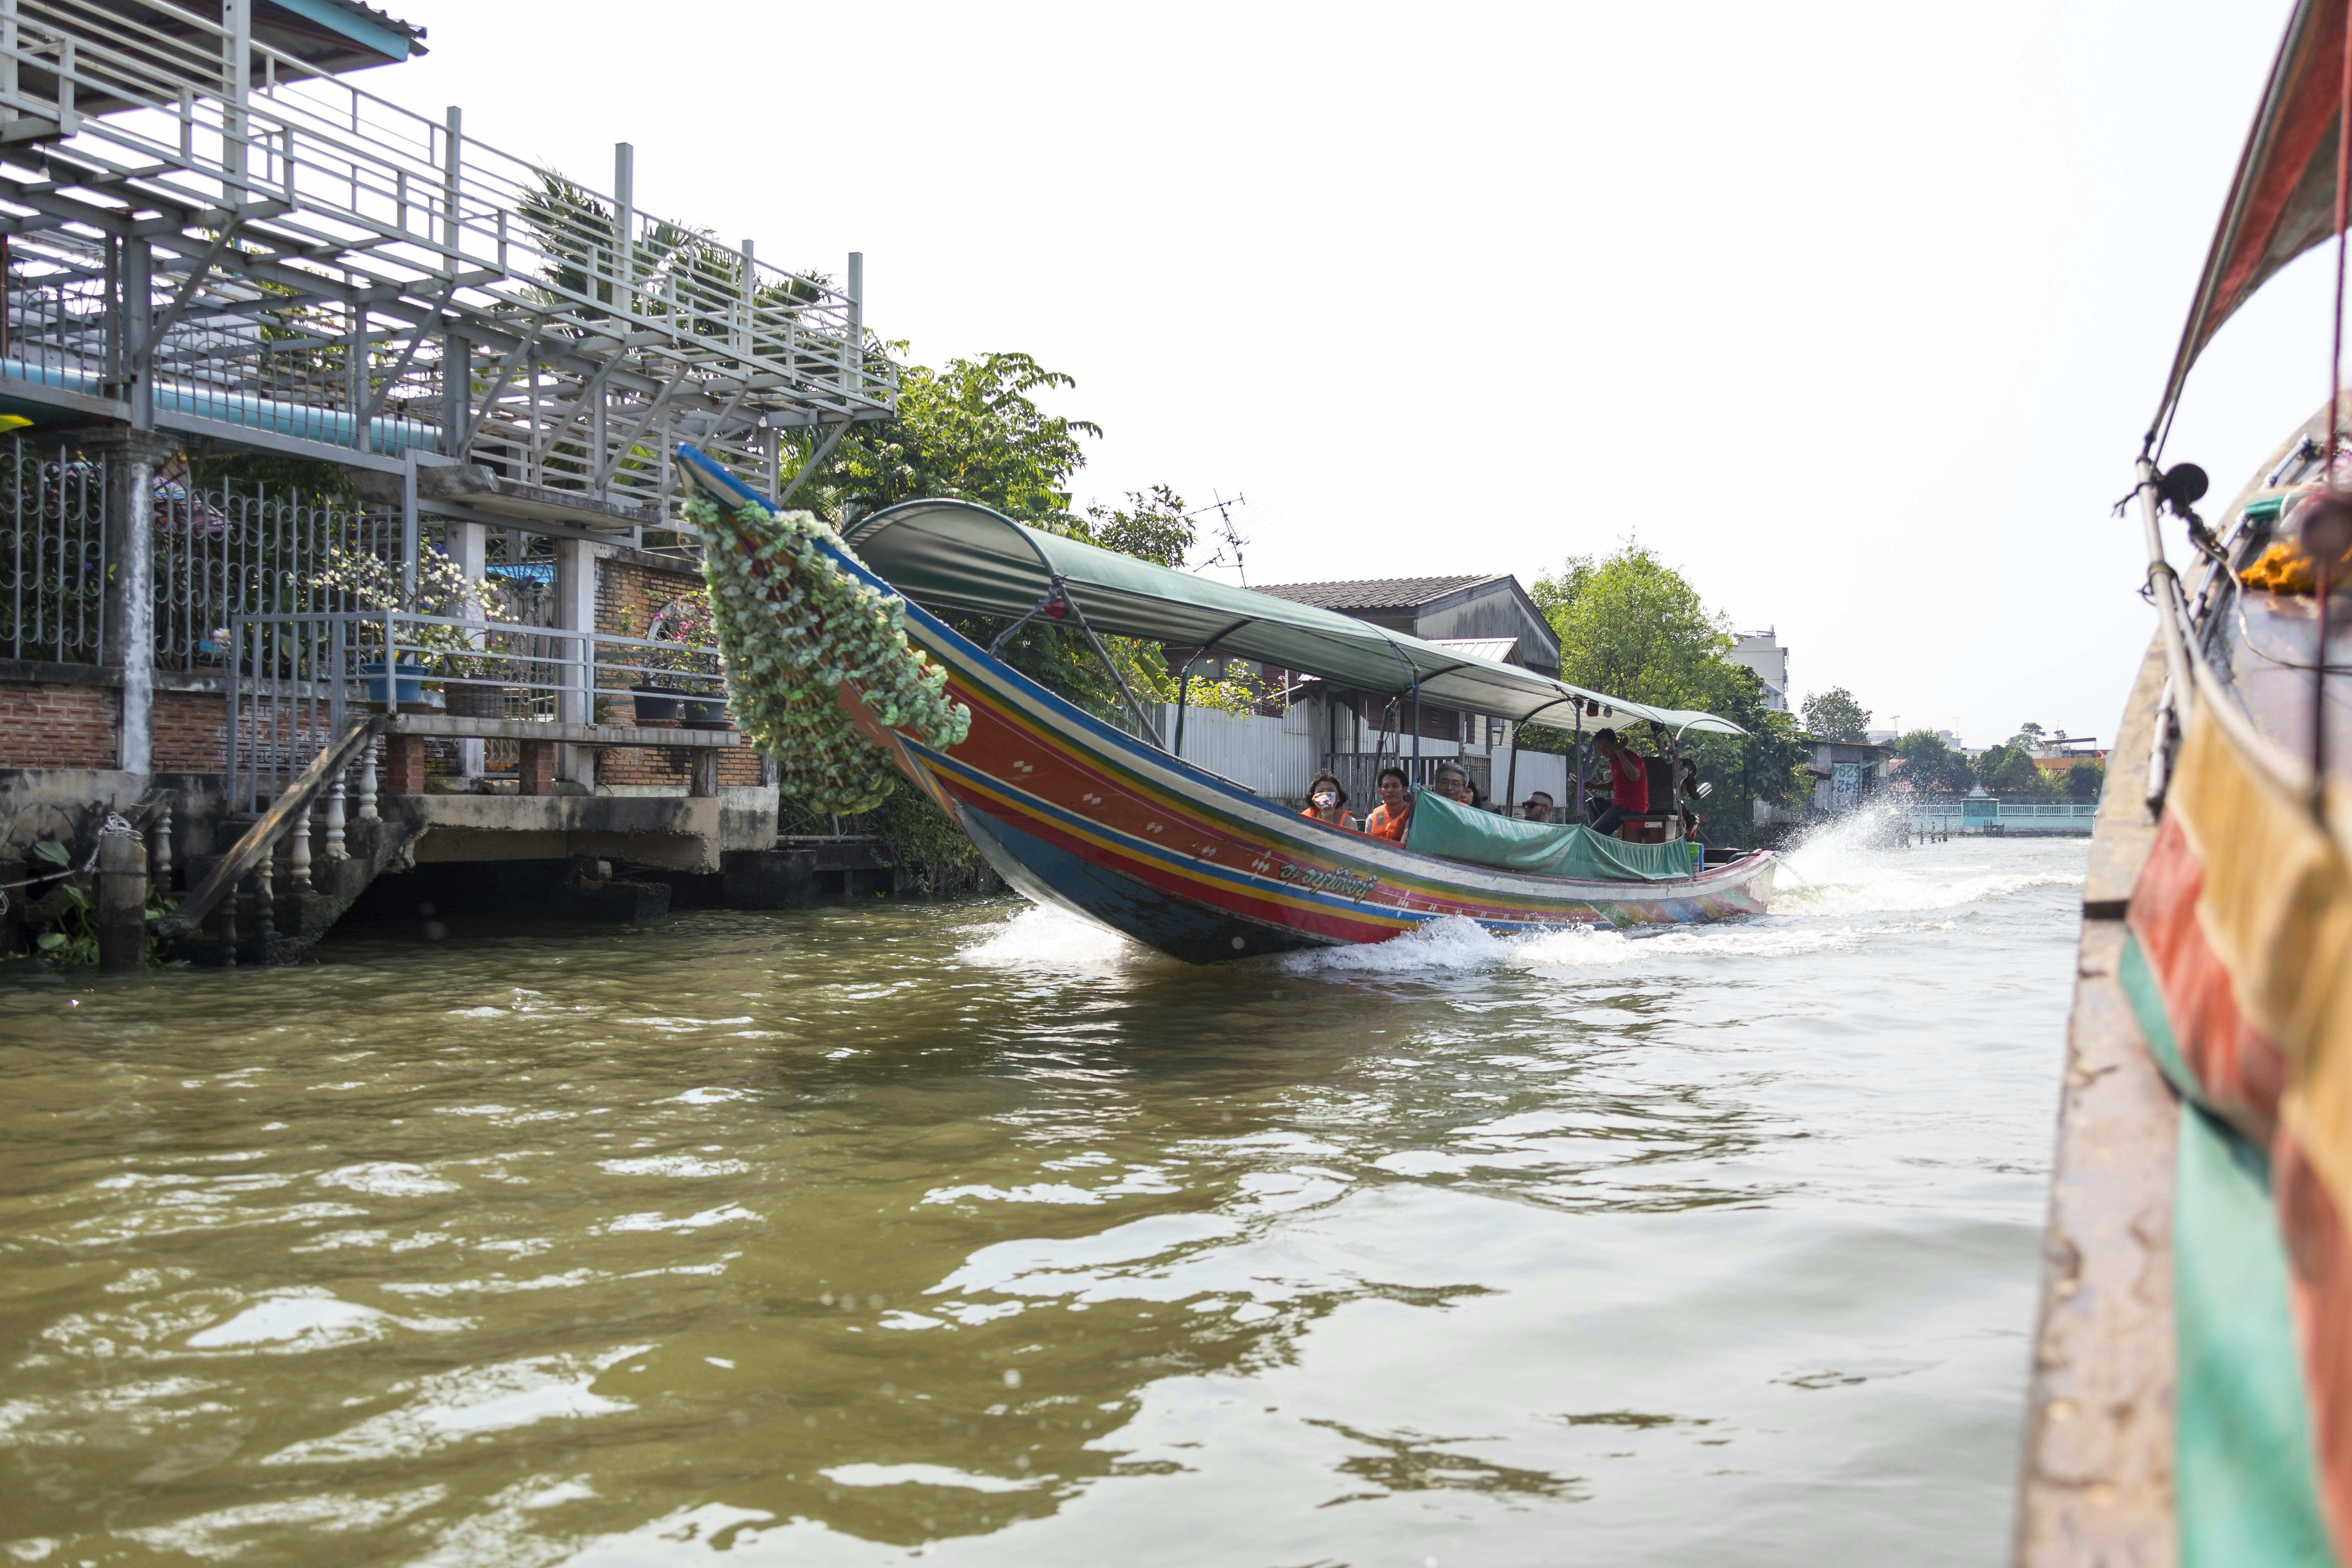 Bangkok Canals & Wat Arun Small Group Tour